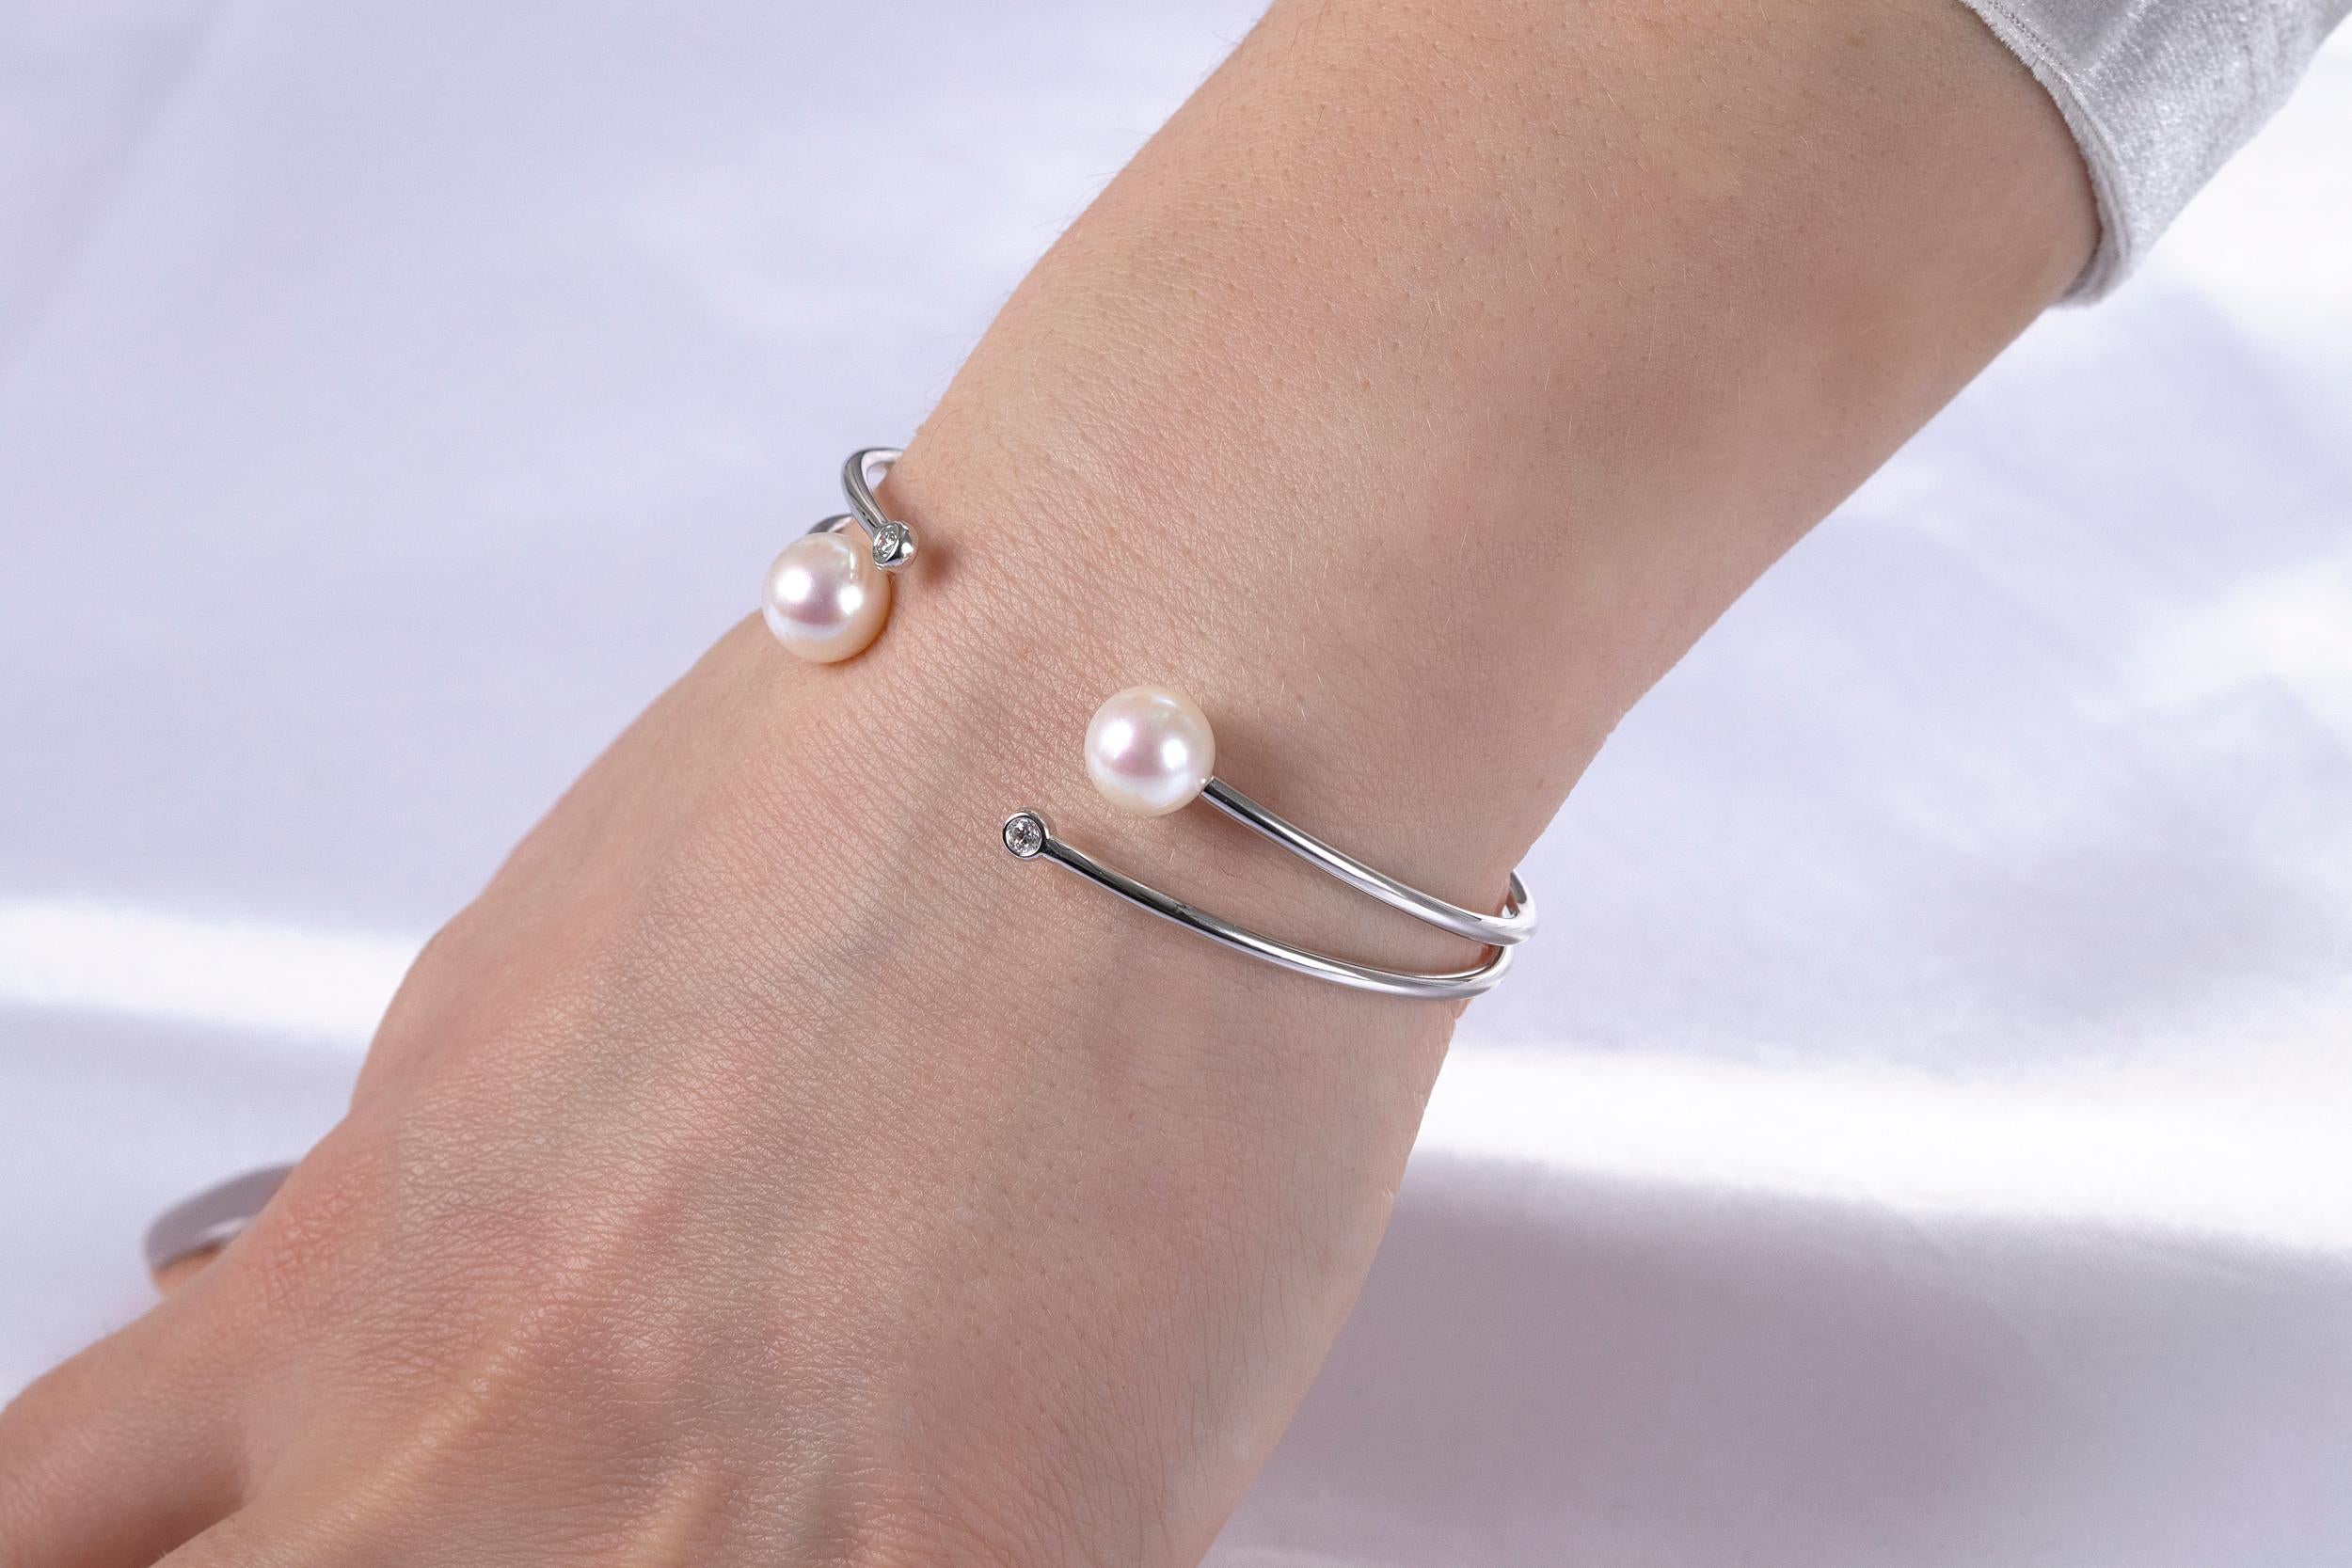 Cet élégant bracelet de Yoko London présente des perles d'eau douce lustrées, accentuées par des diamants blancs étincelants, dans un élégant bracelet à double griffe. Le bracelet est fabriqué avec souplesse, ce qui lui permet de s'adapter aux